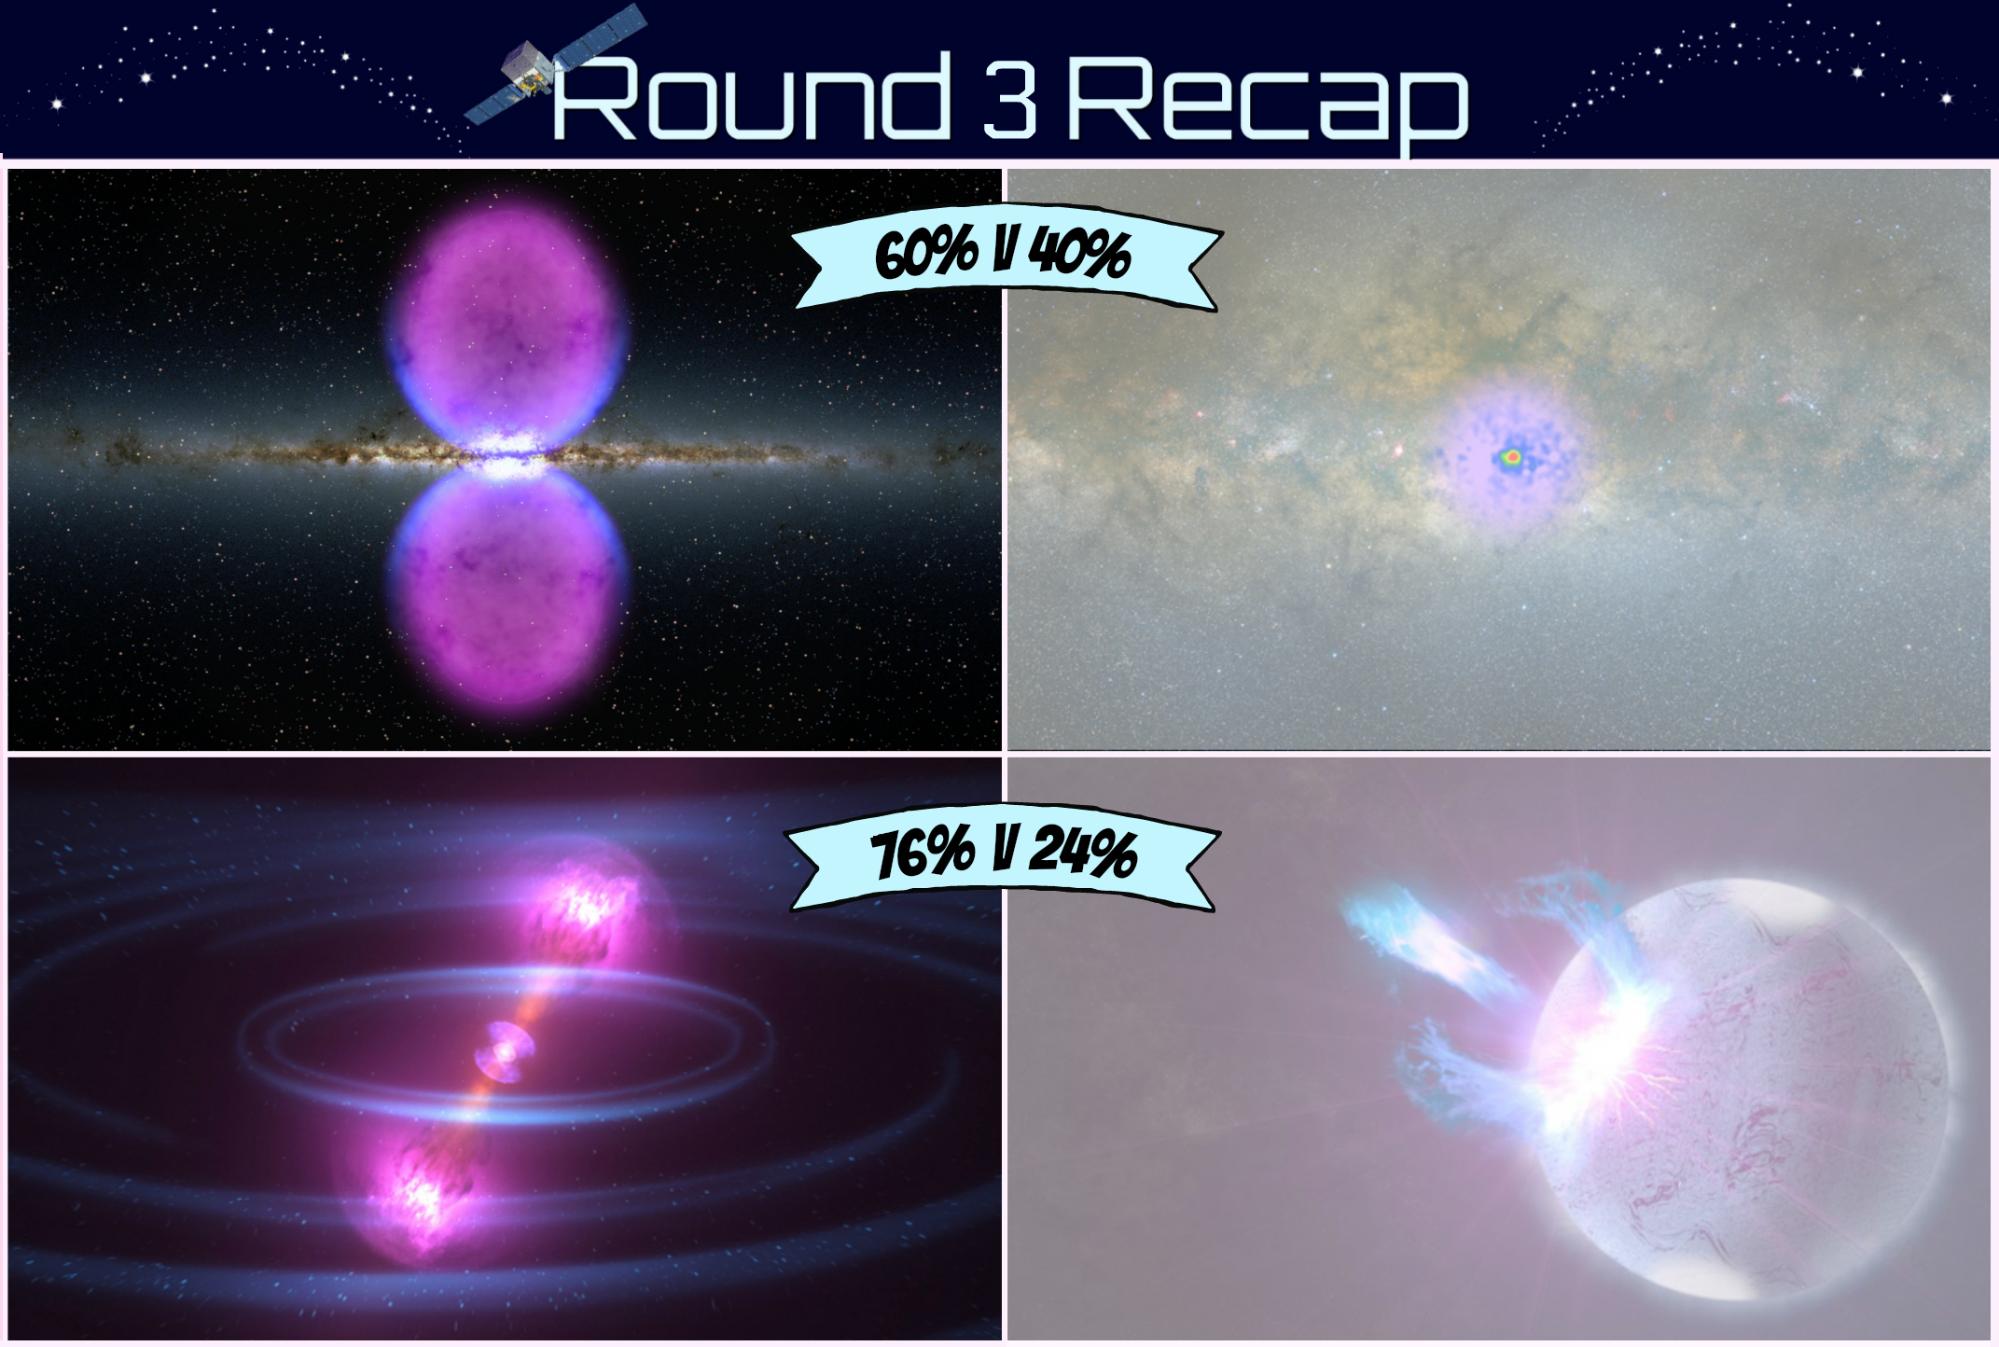 Overview of Fermi Playoffs Round 3
results